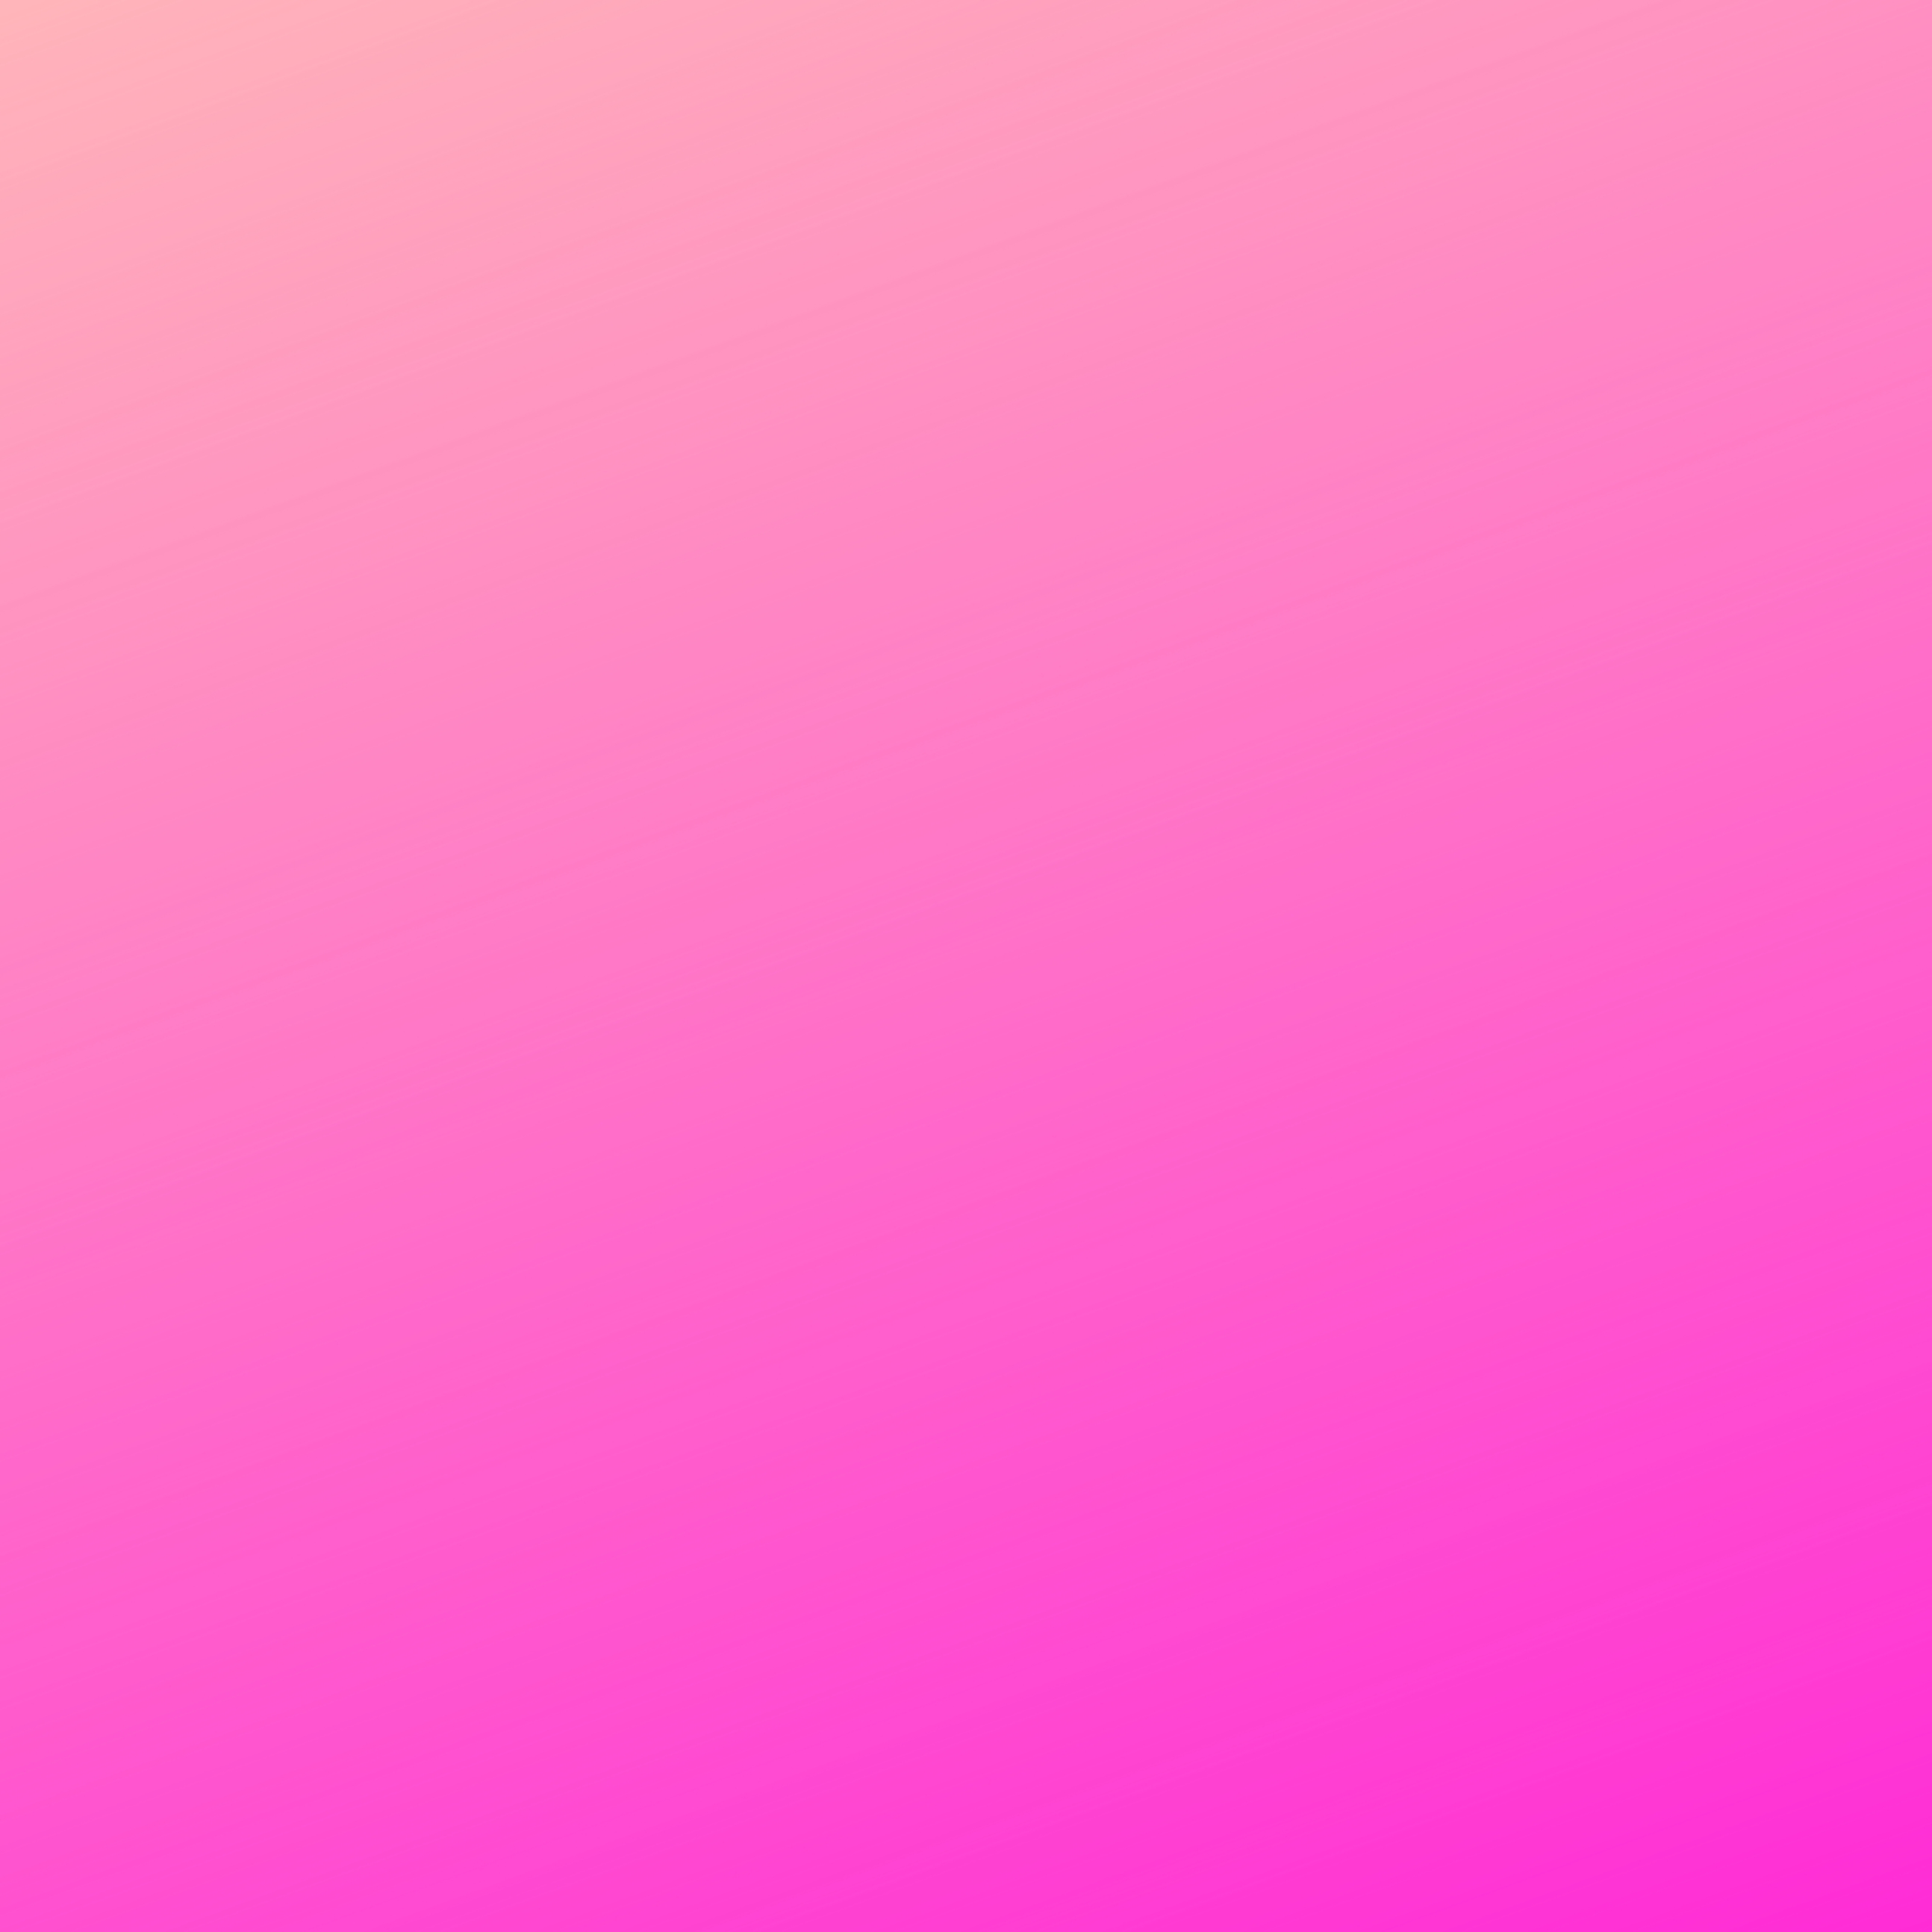 Download HD iPad Wallpapers 4k Pink Gradient Background iPad Wallpaper 3208x3208 pixels 